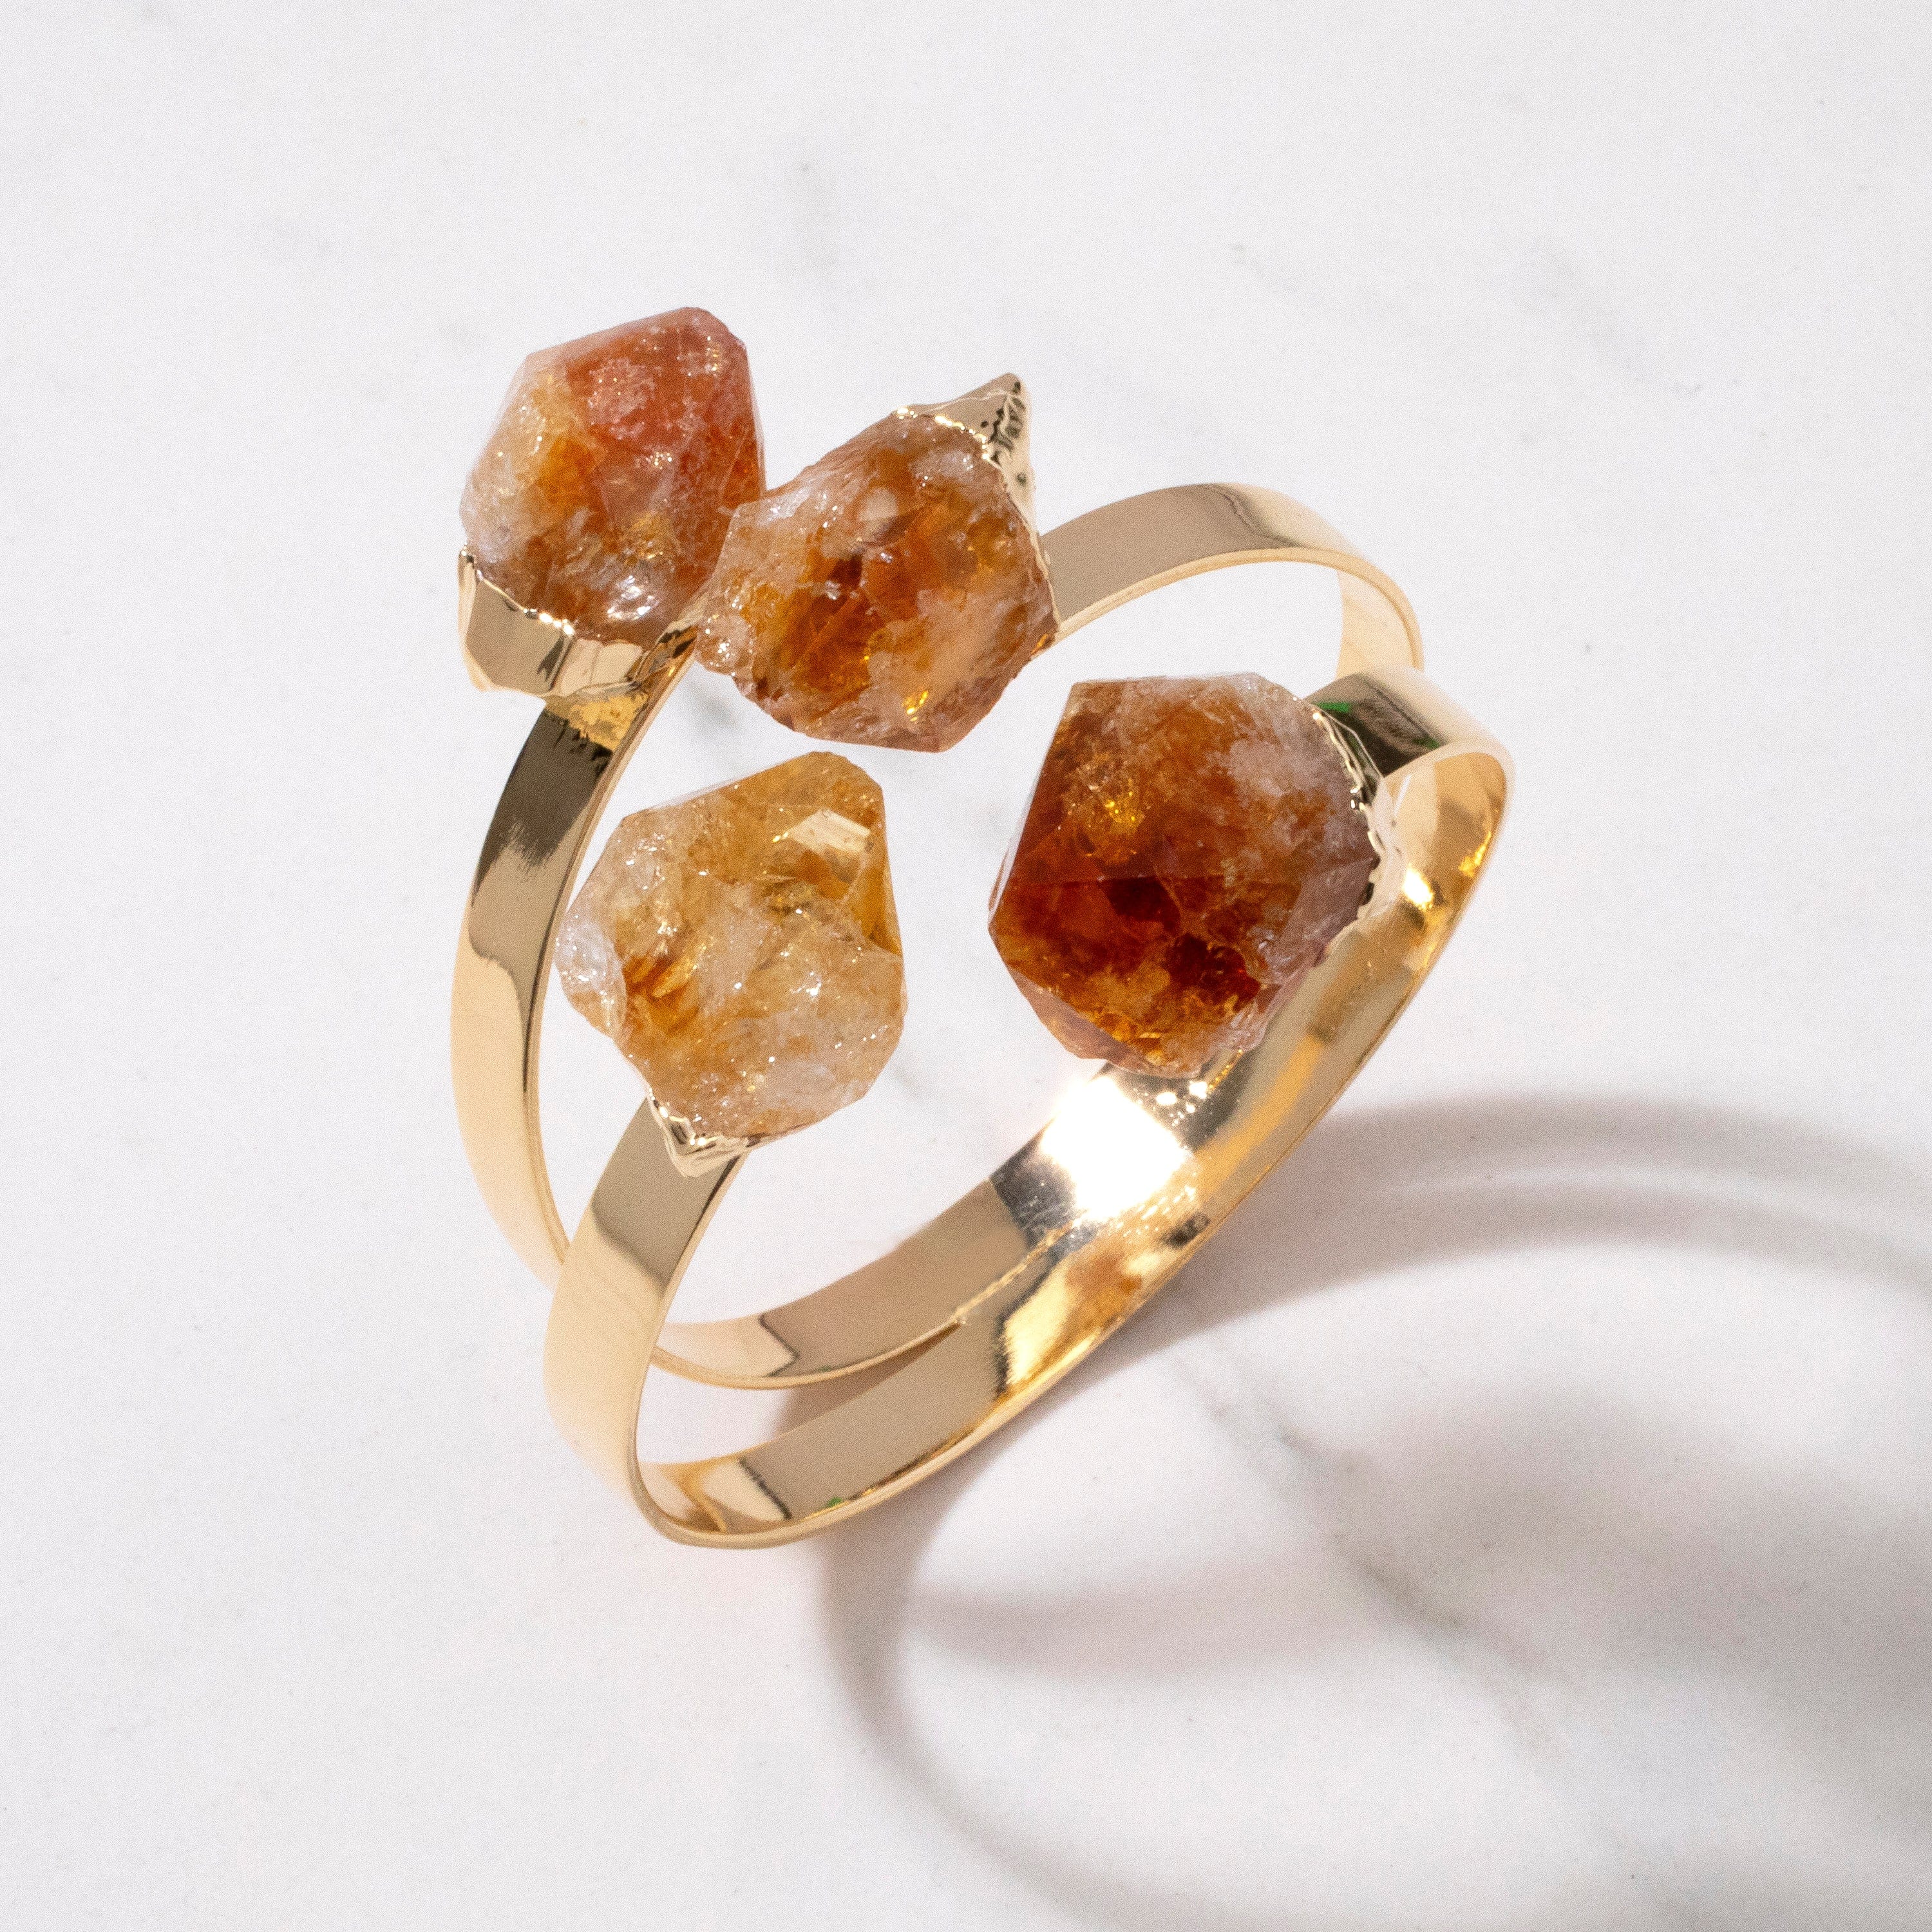 KALIFANO Crystal Jewelry Citrine Double Bracelet Cuff CJB-1012-CT